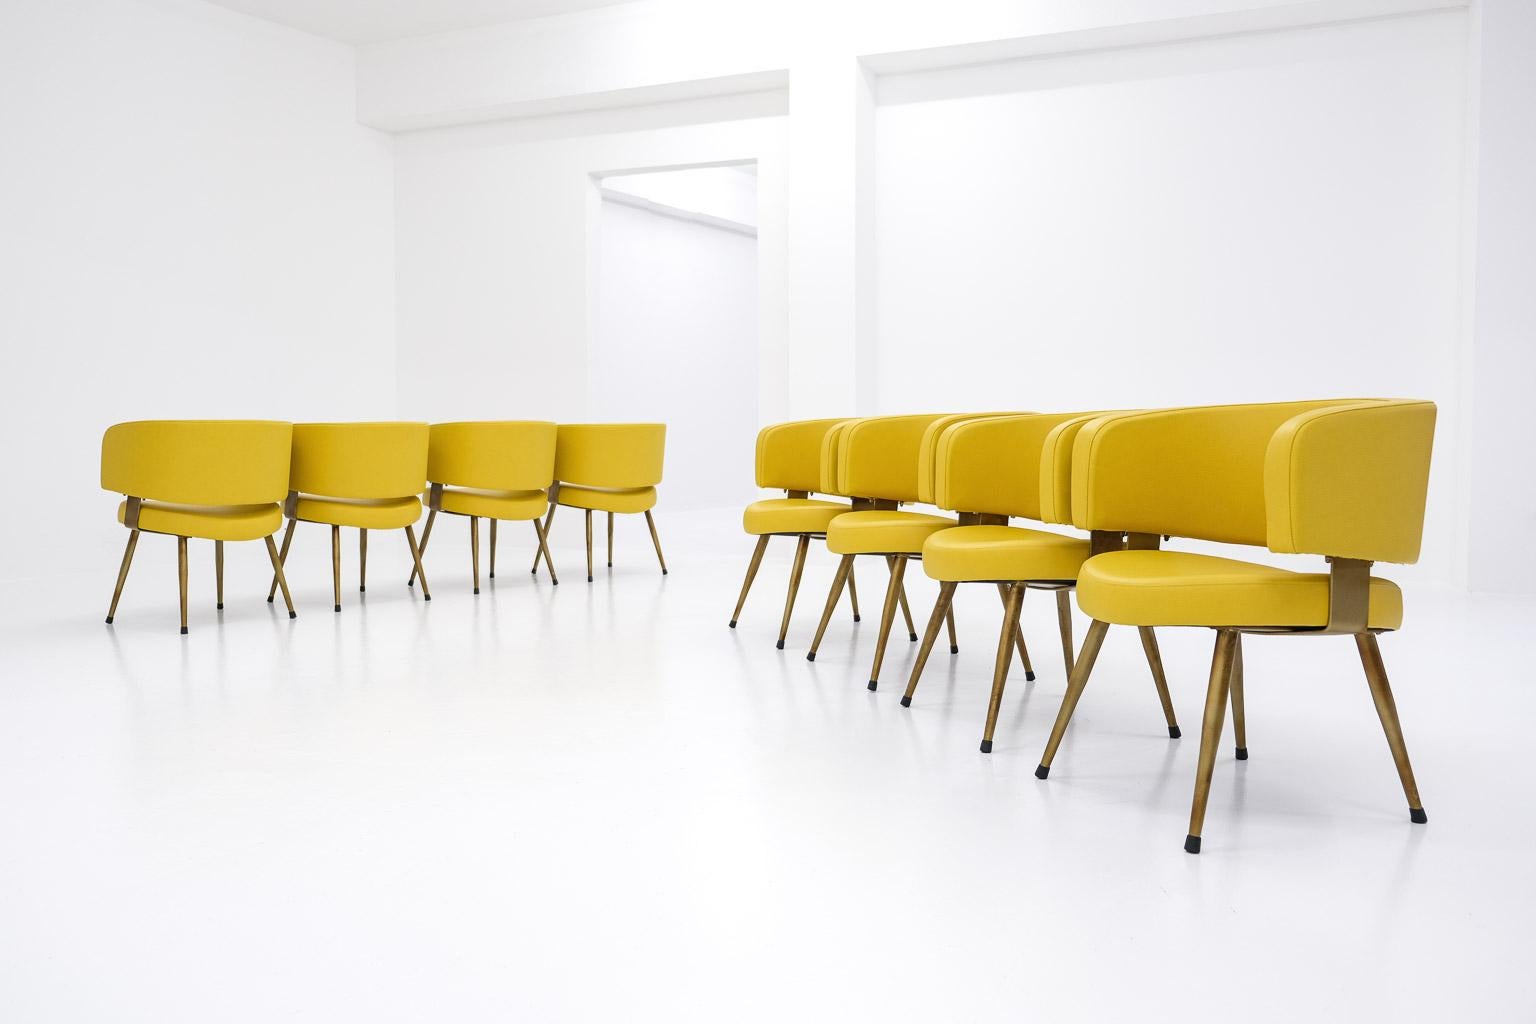 Großer Satz von 8 Sesseln aus Italien aus den 1970er Jahren. Dieses Set ist eine gute Wahl für Innenraumprojekte, Bars/Restaurants oder öffentliche Räume. 

Die Stühle sind neu gepolstert und mit einem warmen, hellen Kunstleder bezogen, mit einem